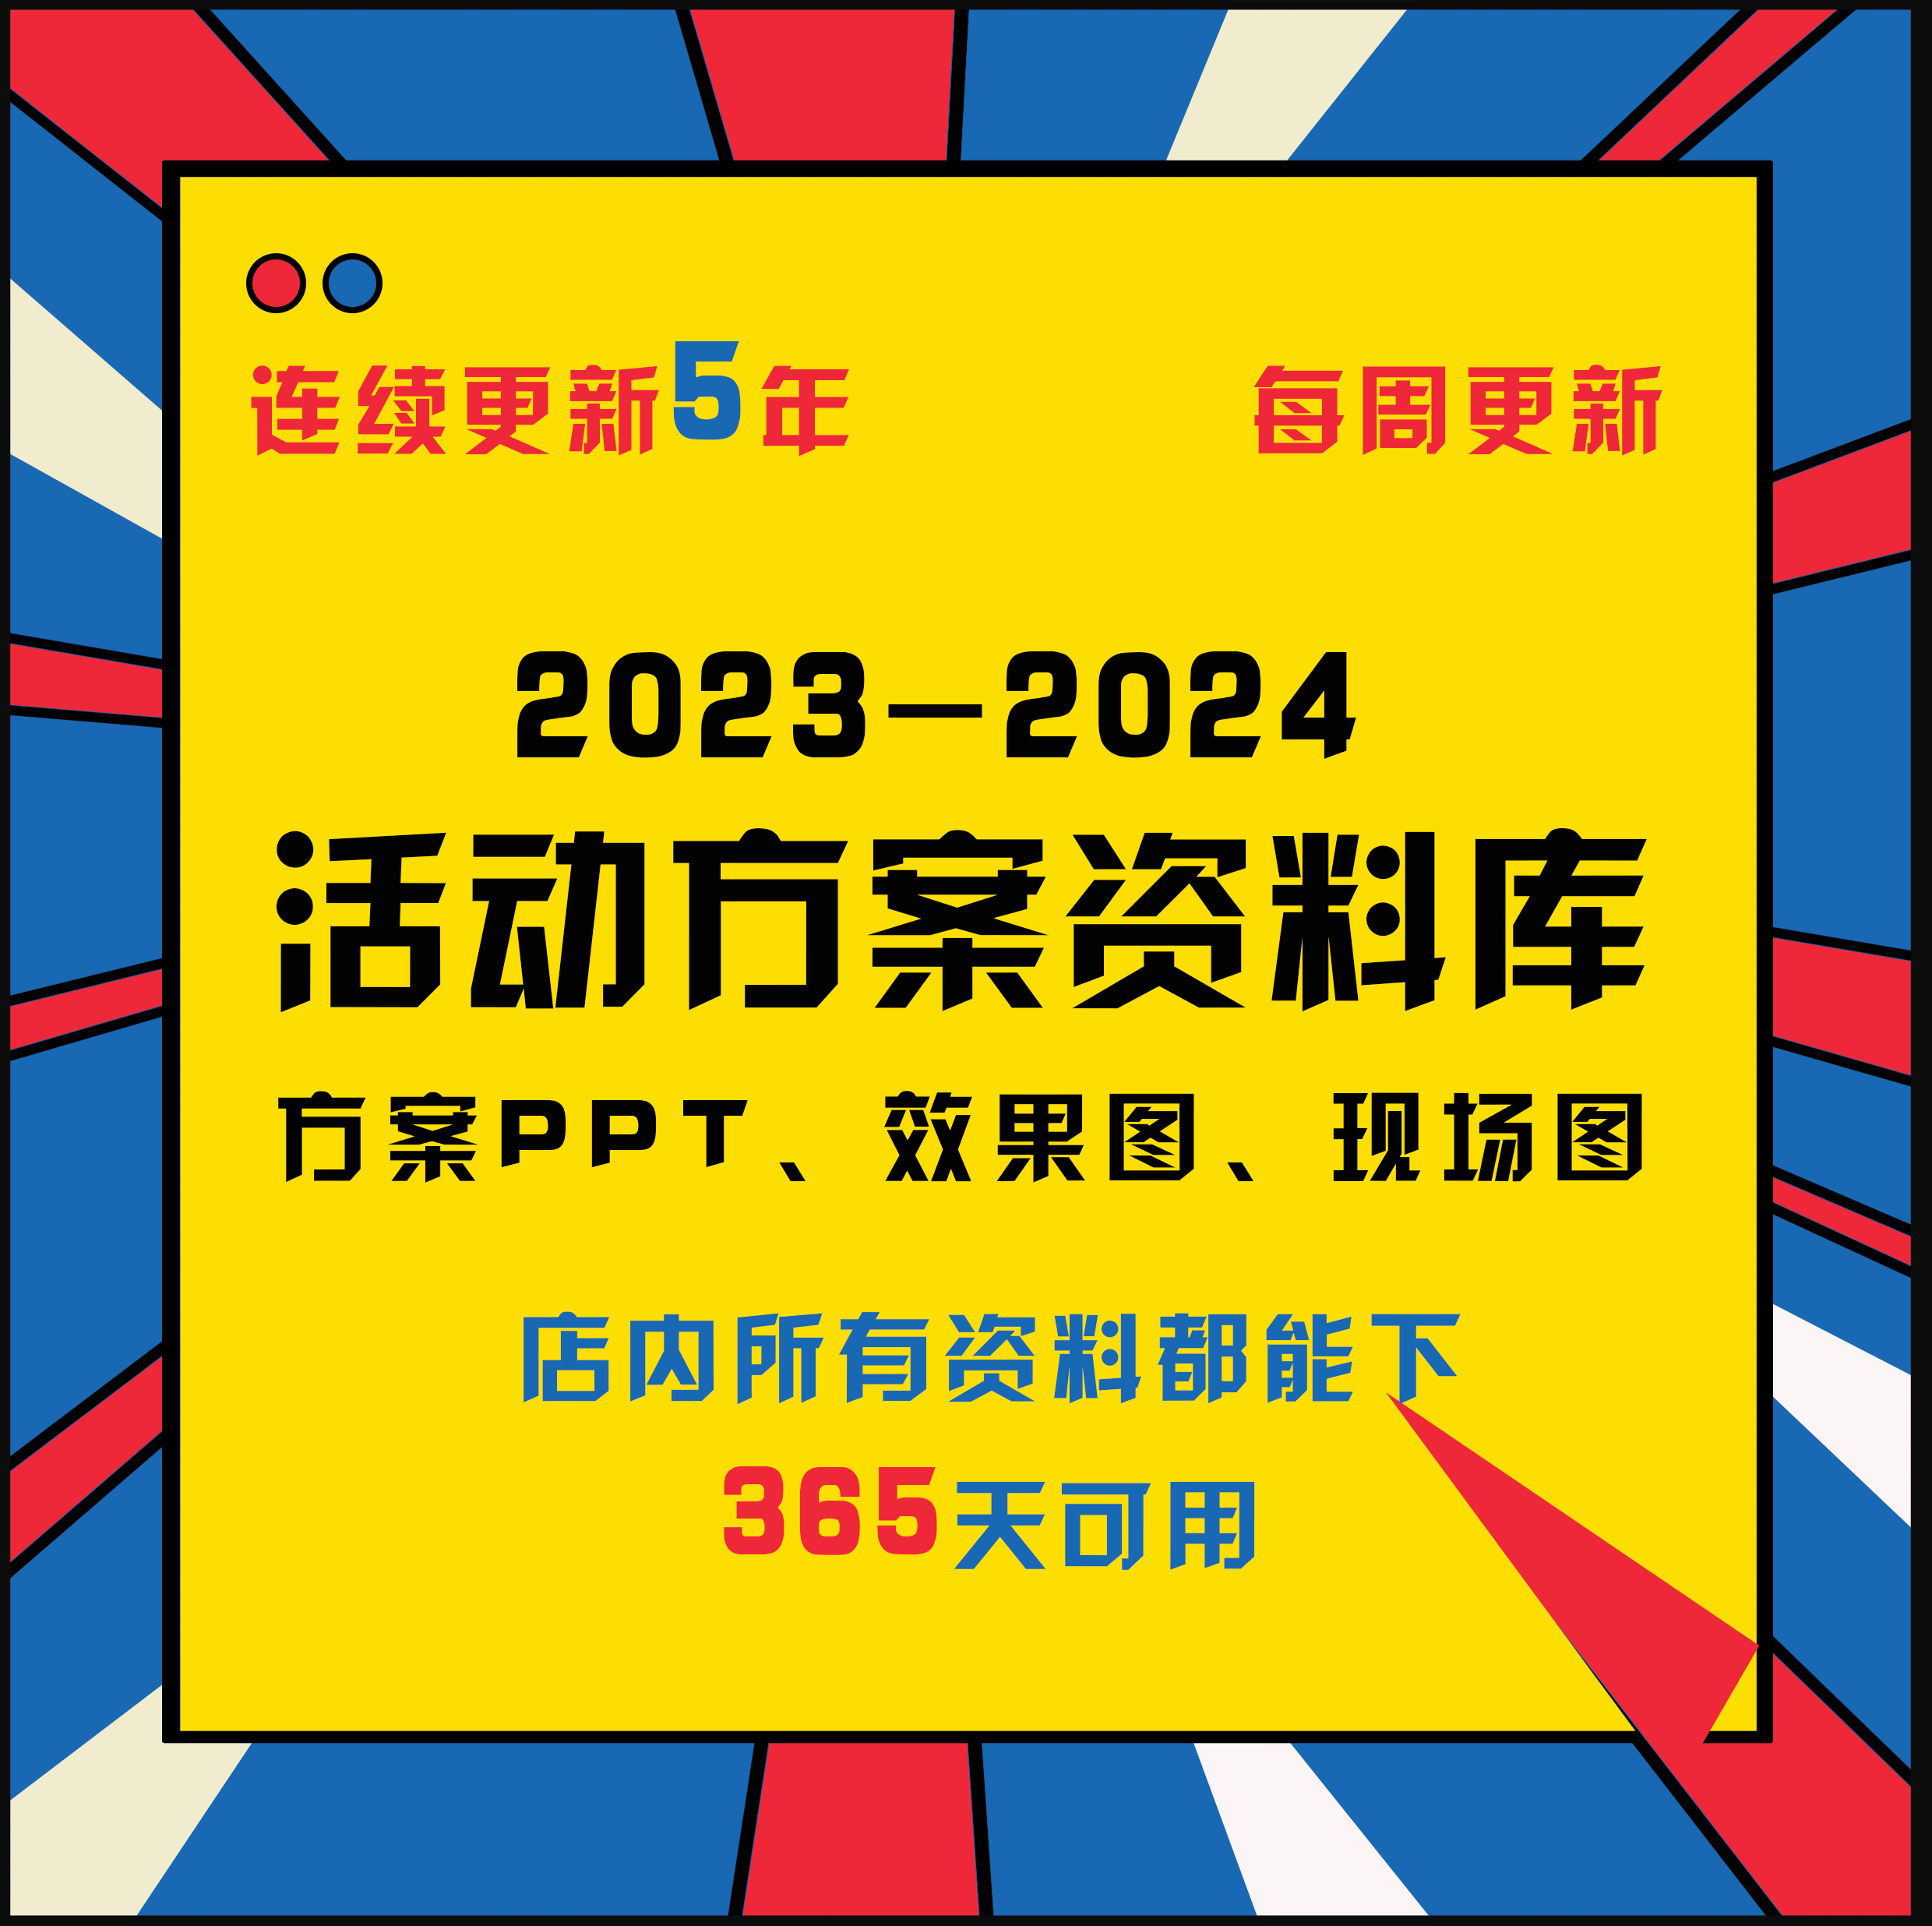 2023-2024年新广告公关活动策划传播方案ppt美陈布置现场图效果图-封面